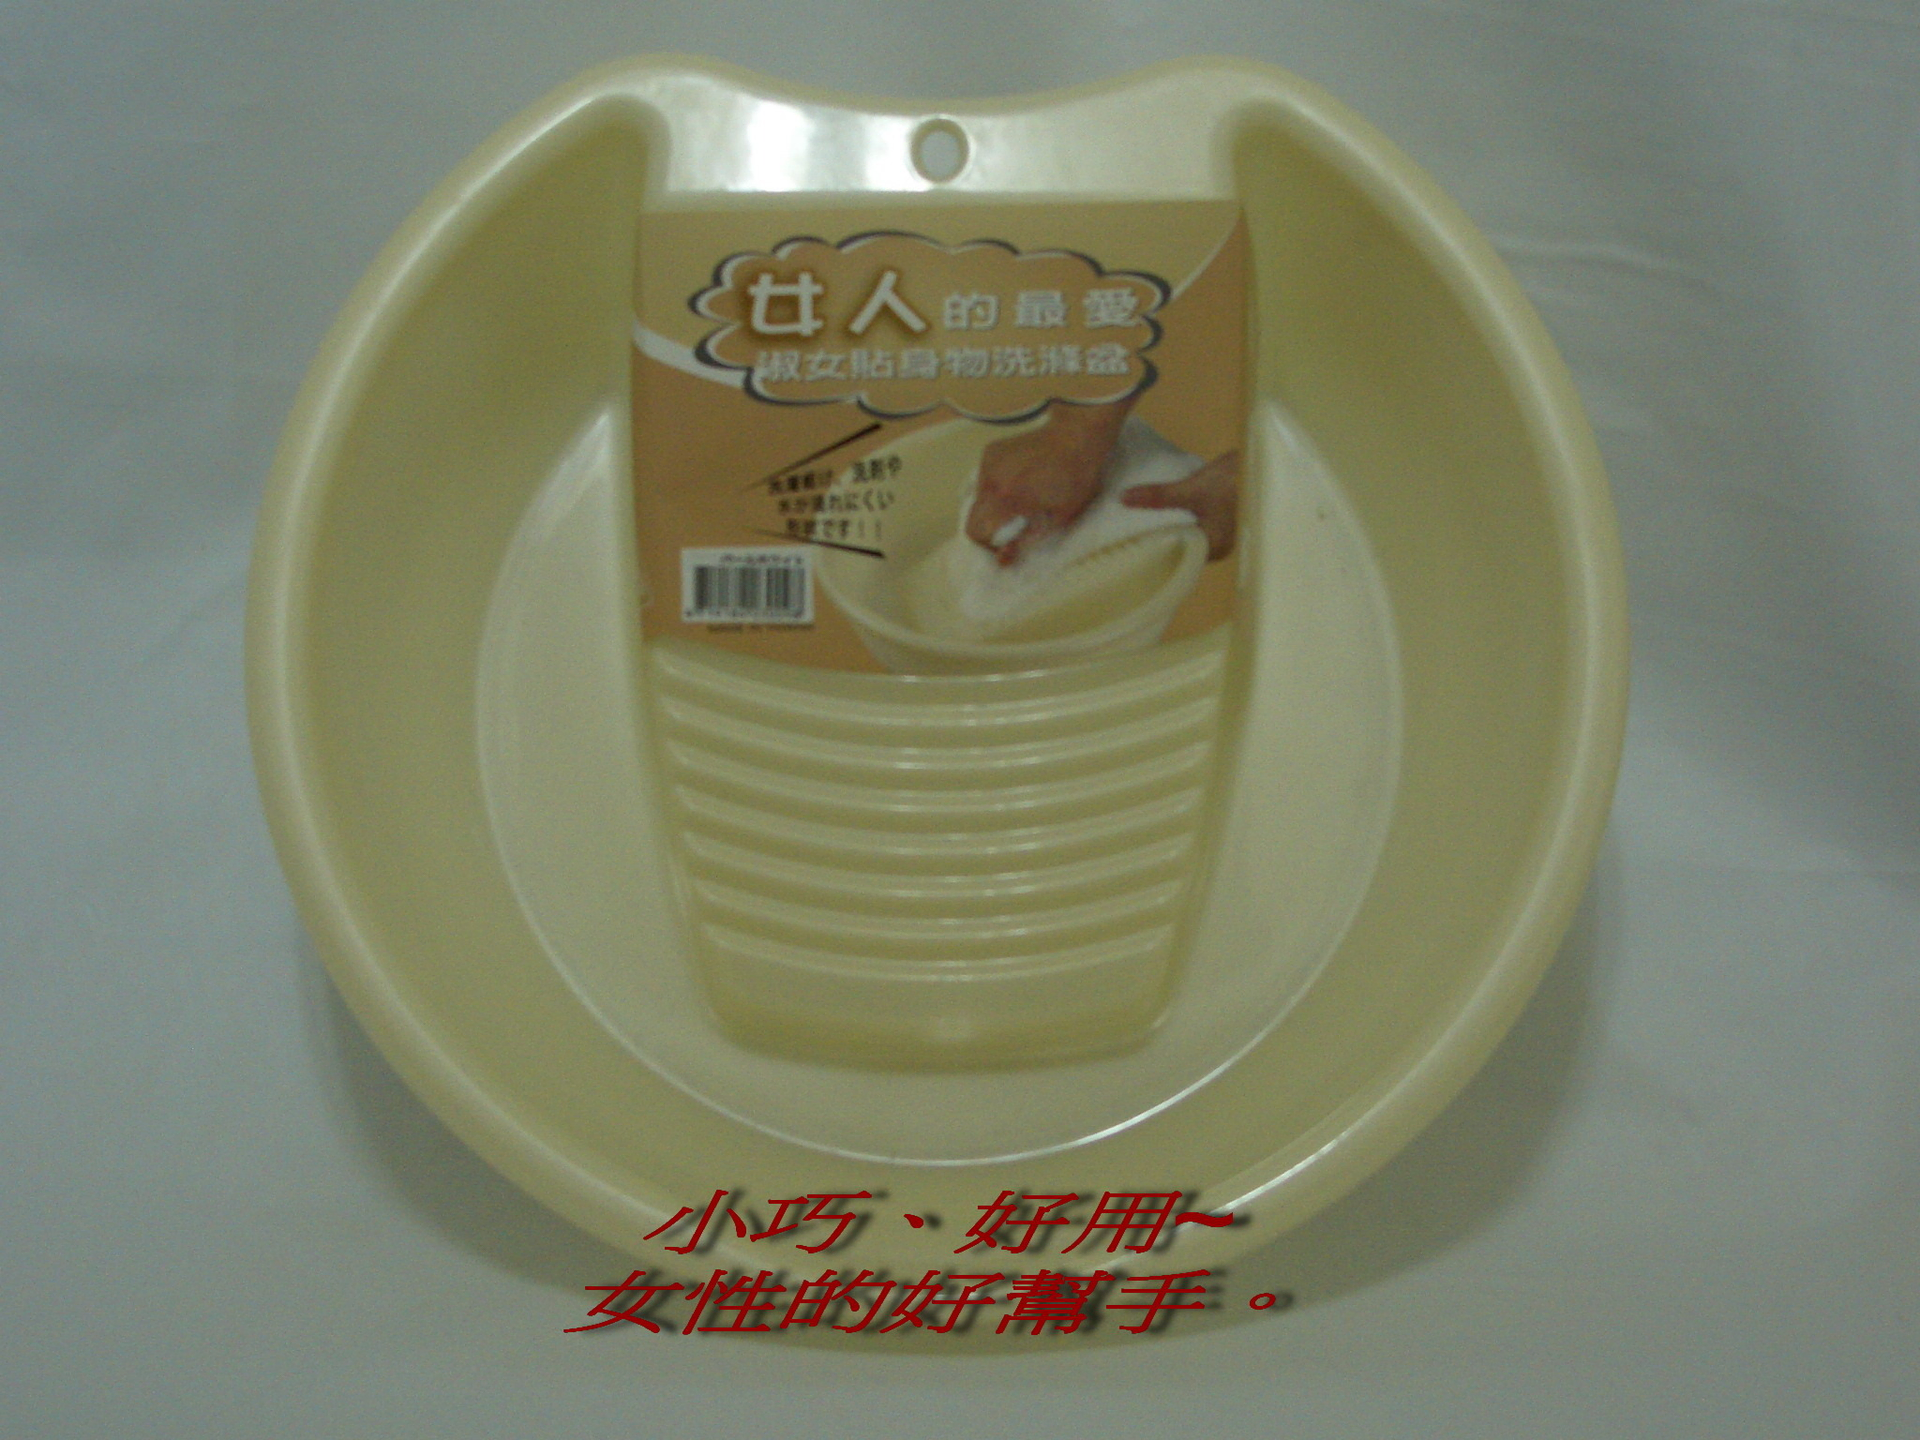 A033貼身衣物洗滌盆-米黃